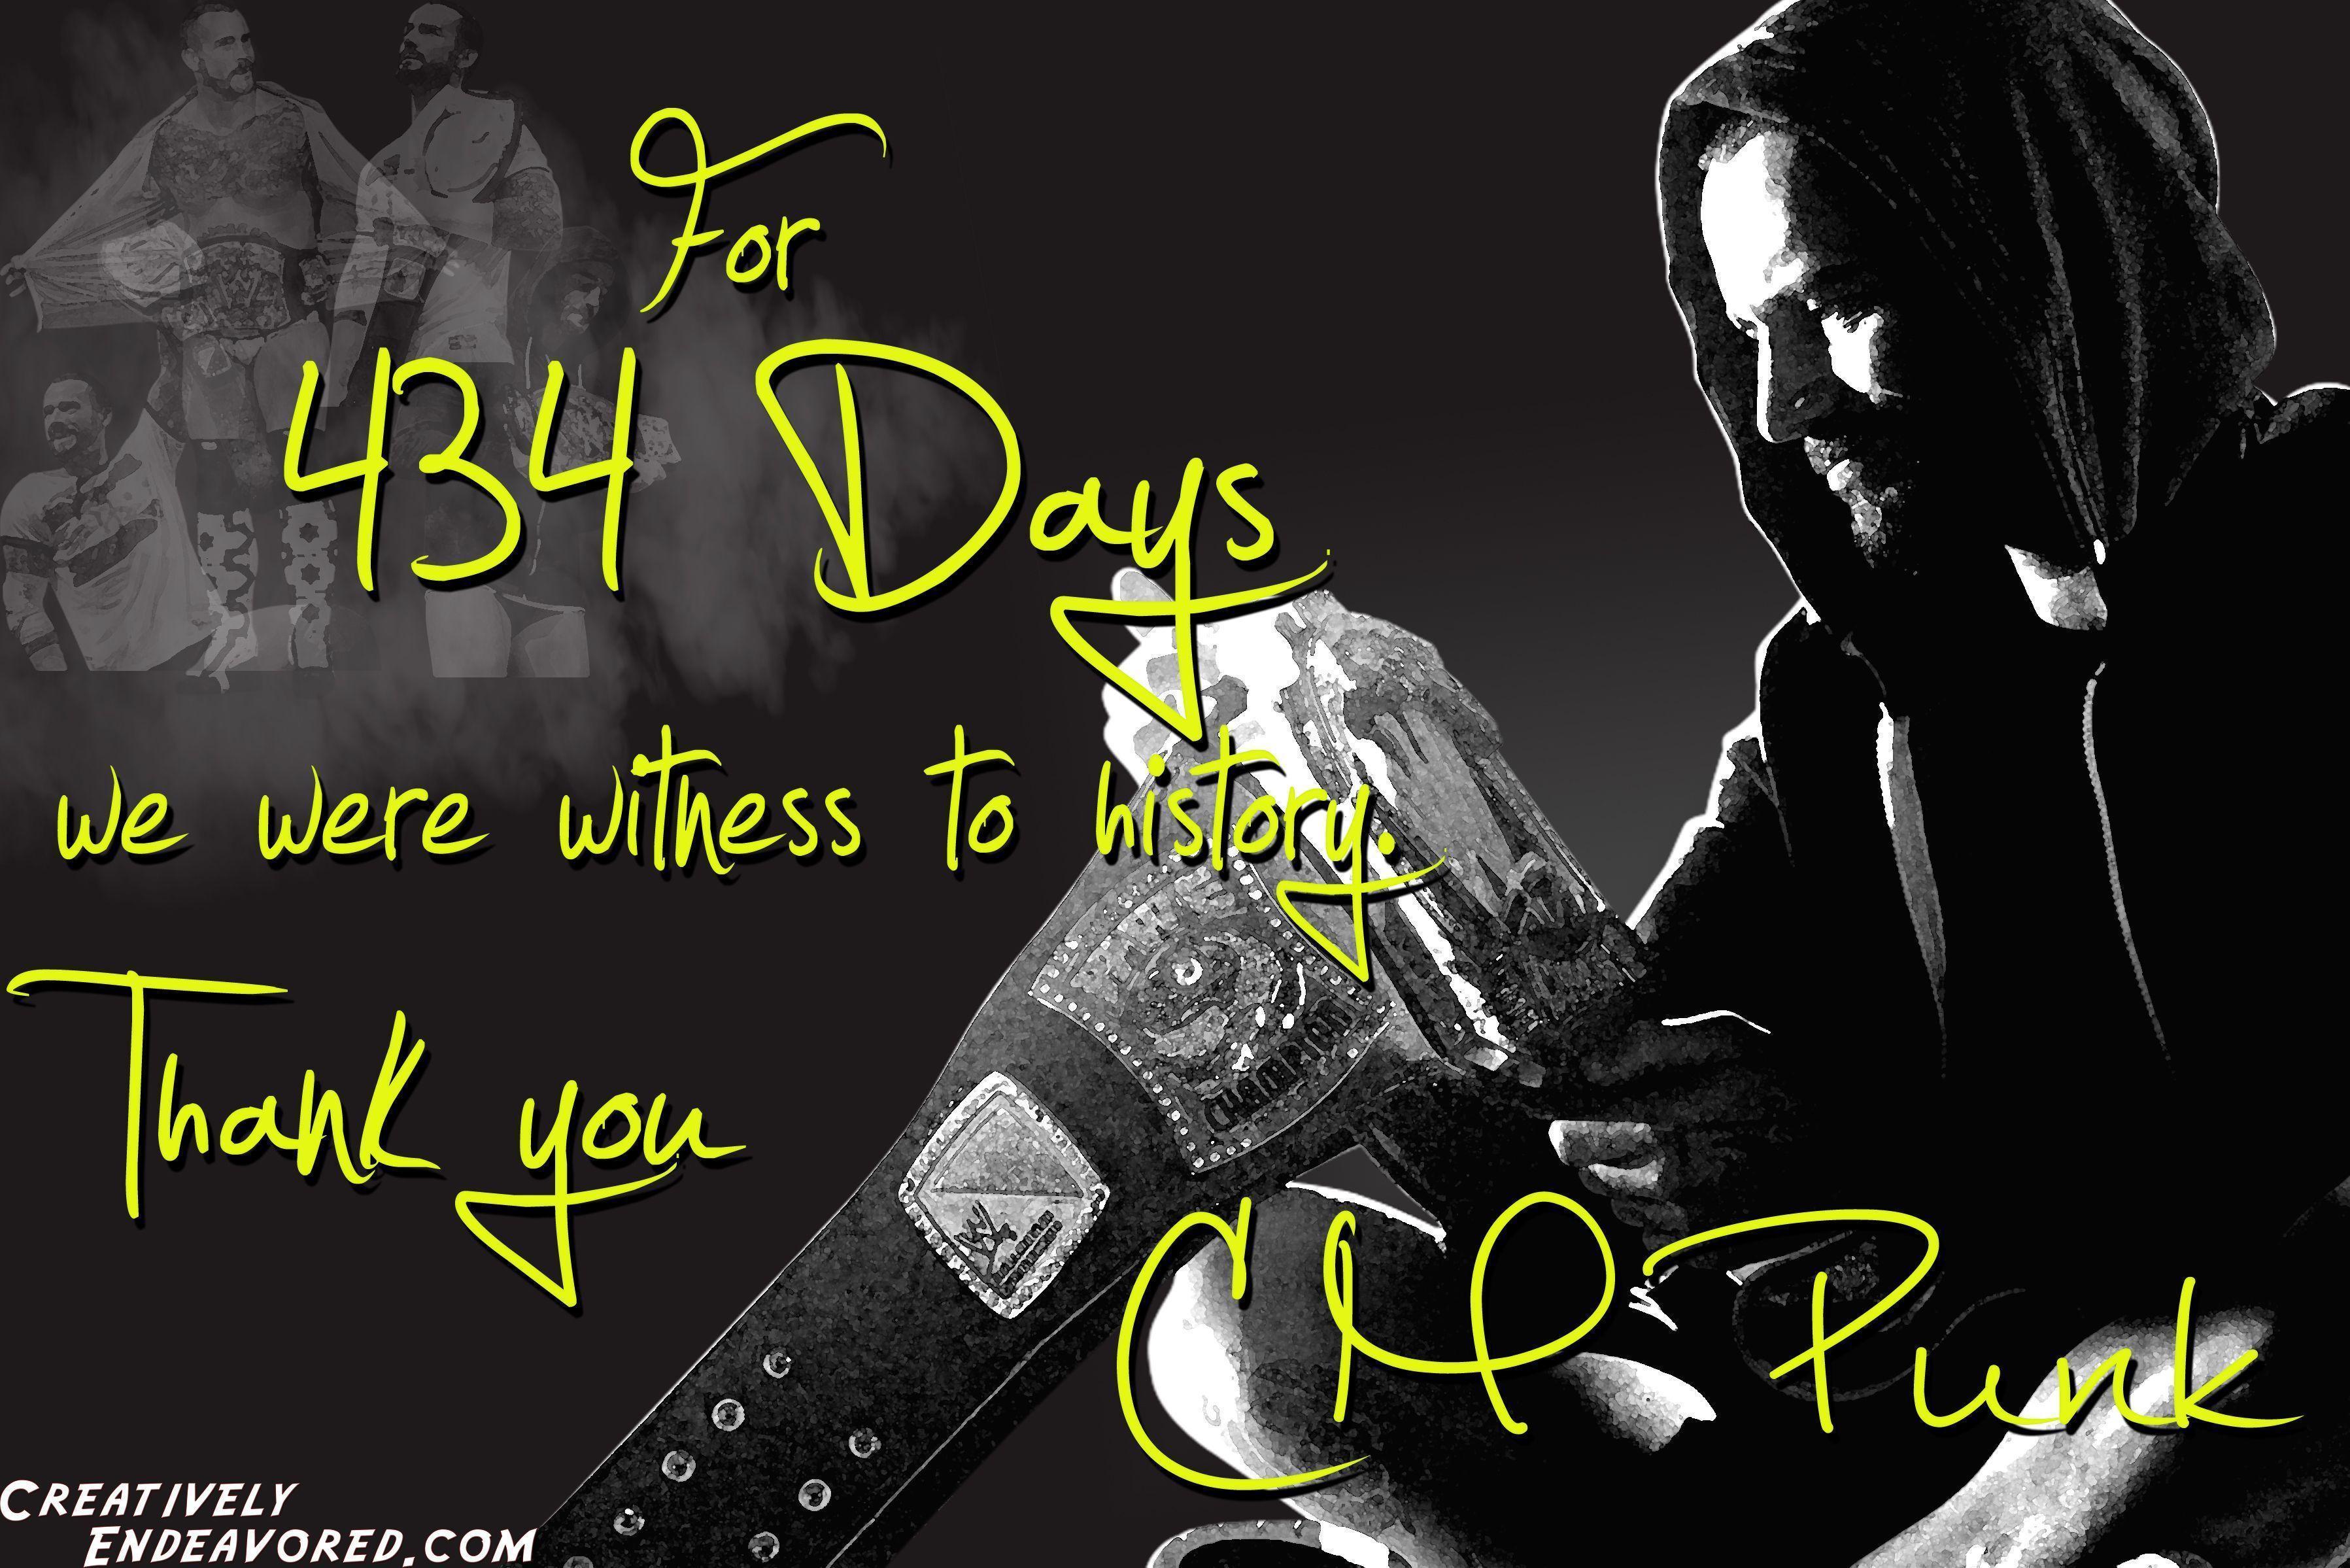 Wallpaper Wednesday: CM Punk “434” Wallpaper. Keep Calm & Watch